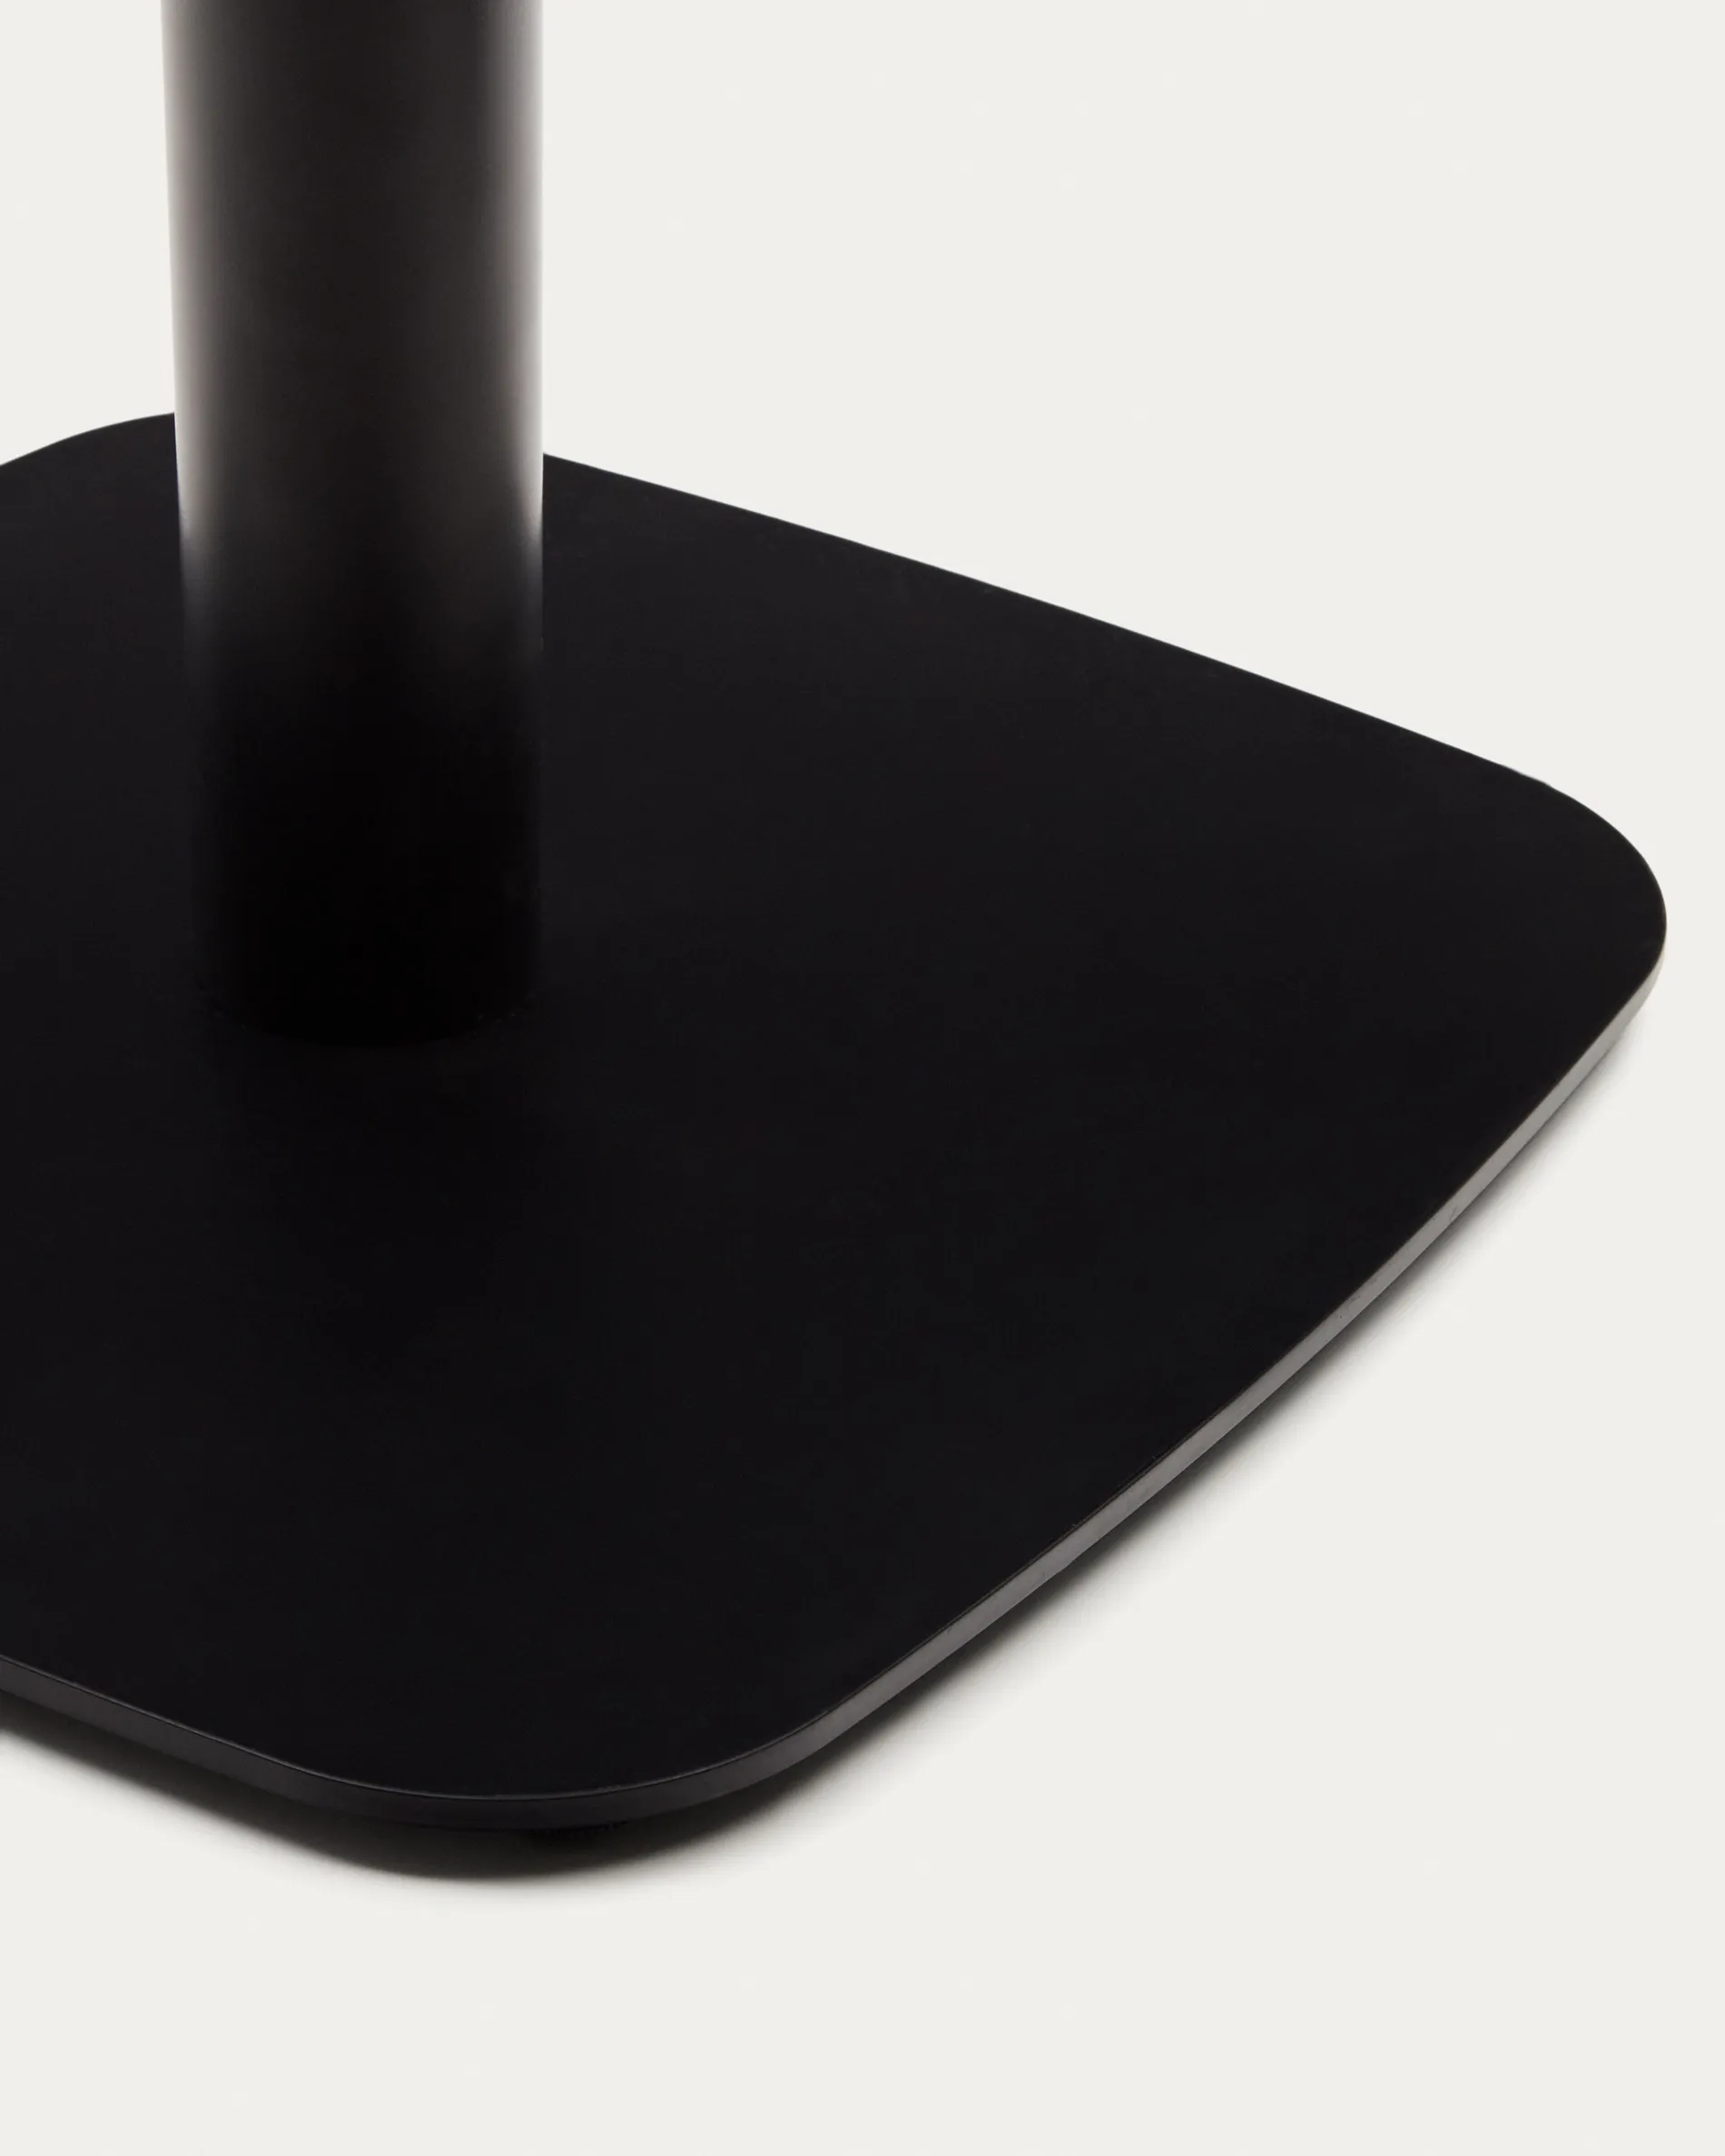 Барный стол La Forma Dina с ореховой отделкой и металлической черной ножкой 60x60x96 177057